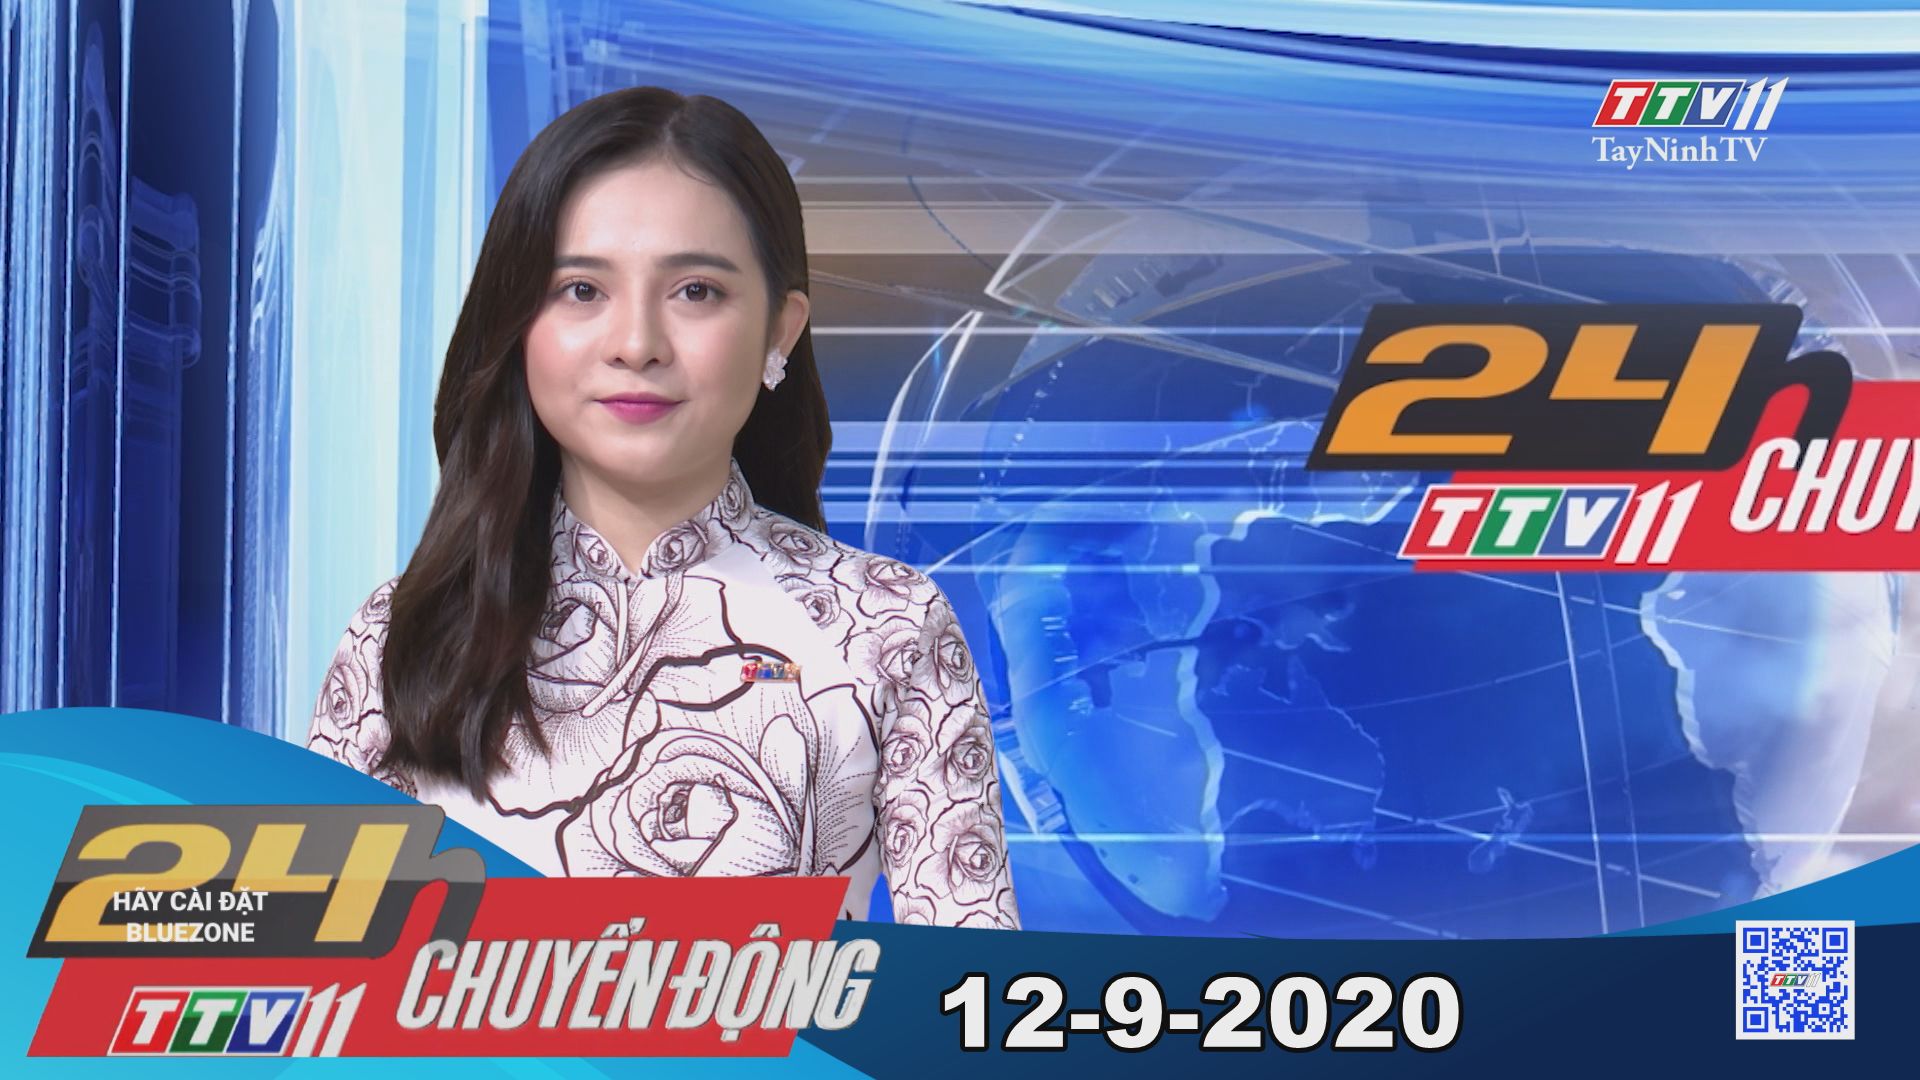 24h Chuyển động 12-9-2020 | Tin tức hôm nay | TayNinhTV 